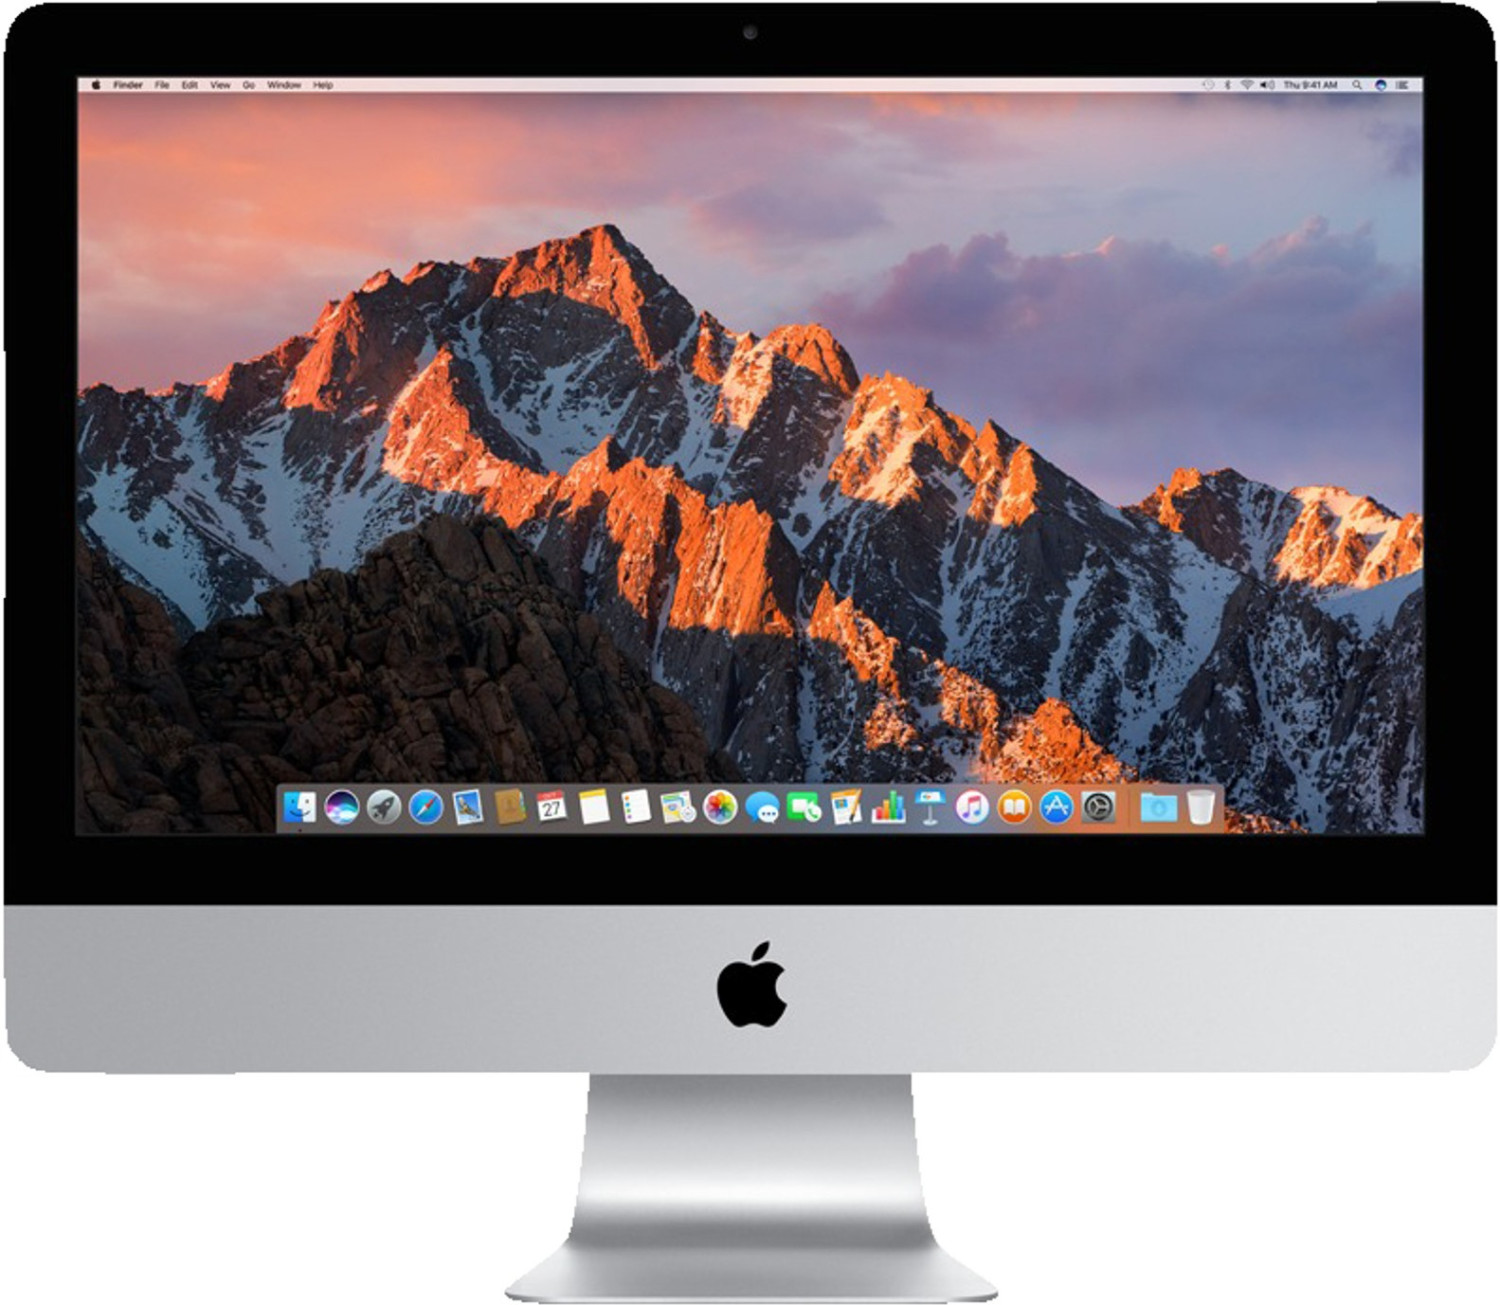 Apple iMac 21,5" mit Retina 4K Display (MNDY2D/A)